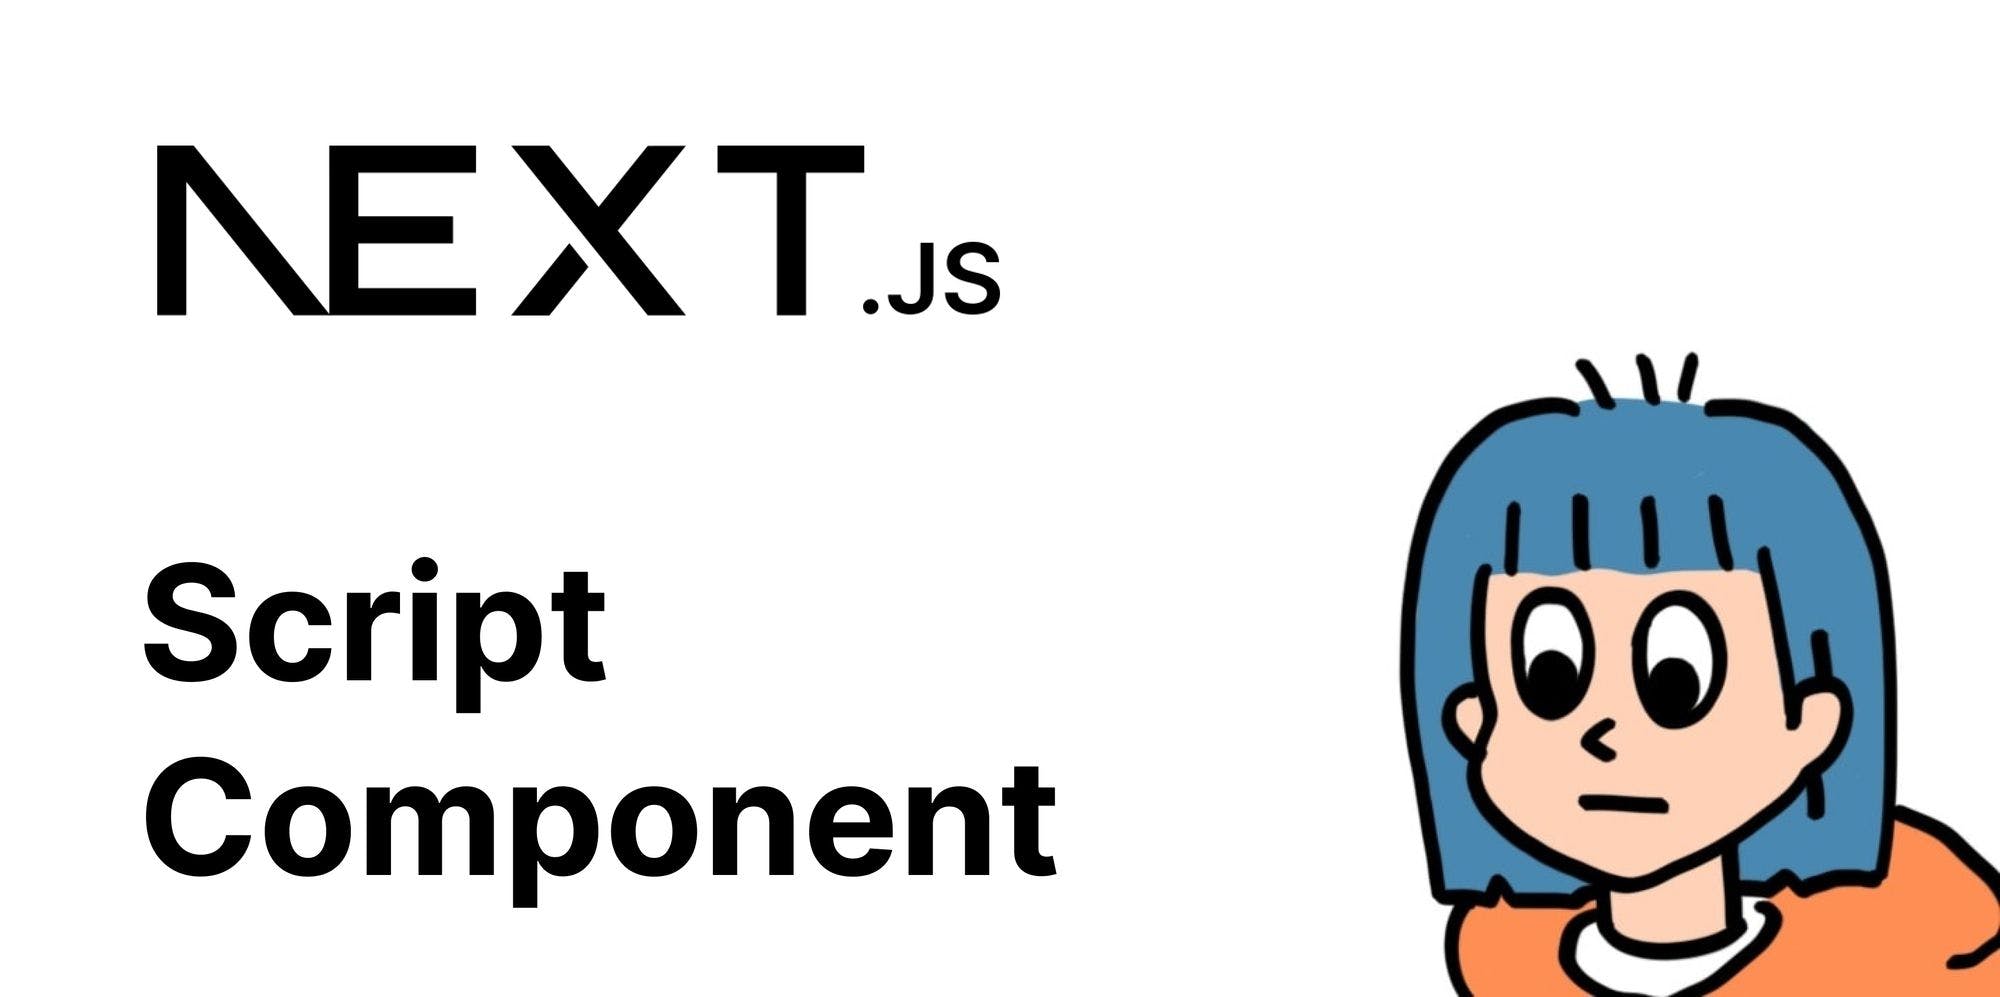 [ Next.js ] Script Component